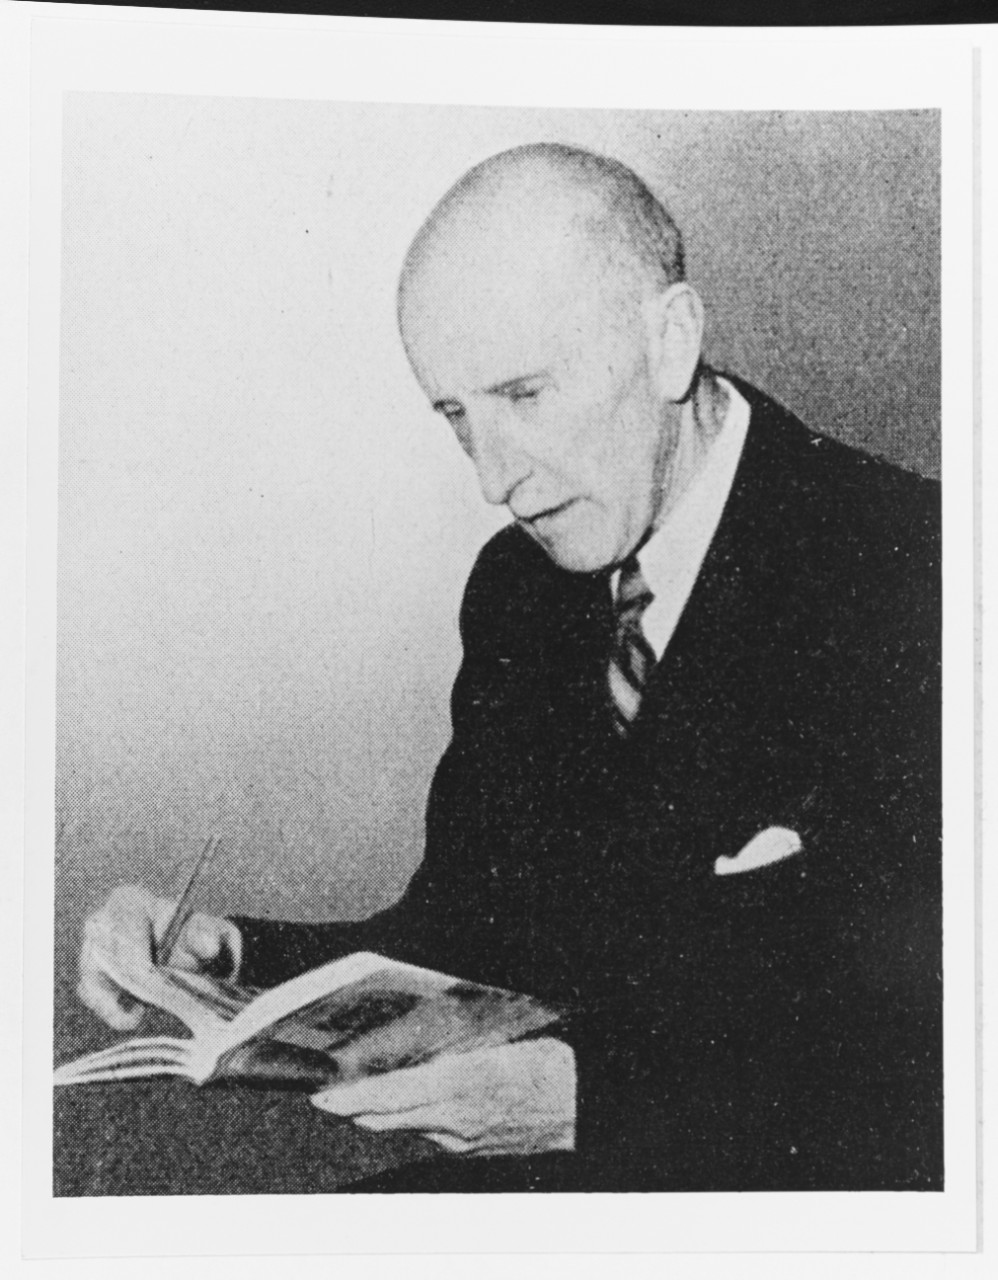 Professor Claus Bergen, 1885-1964